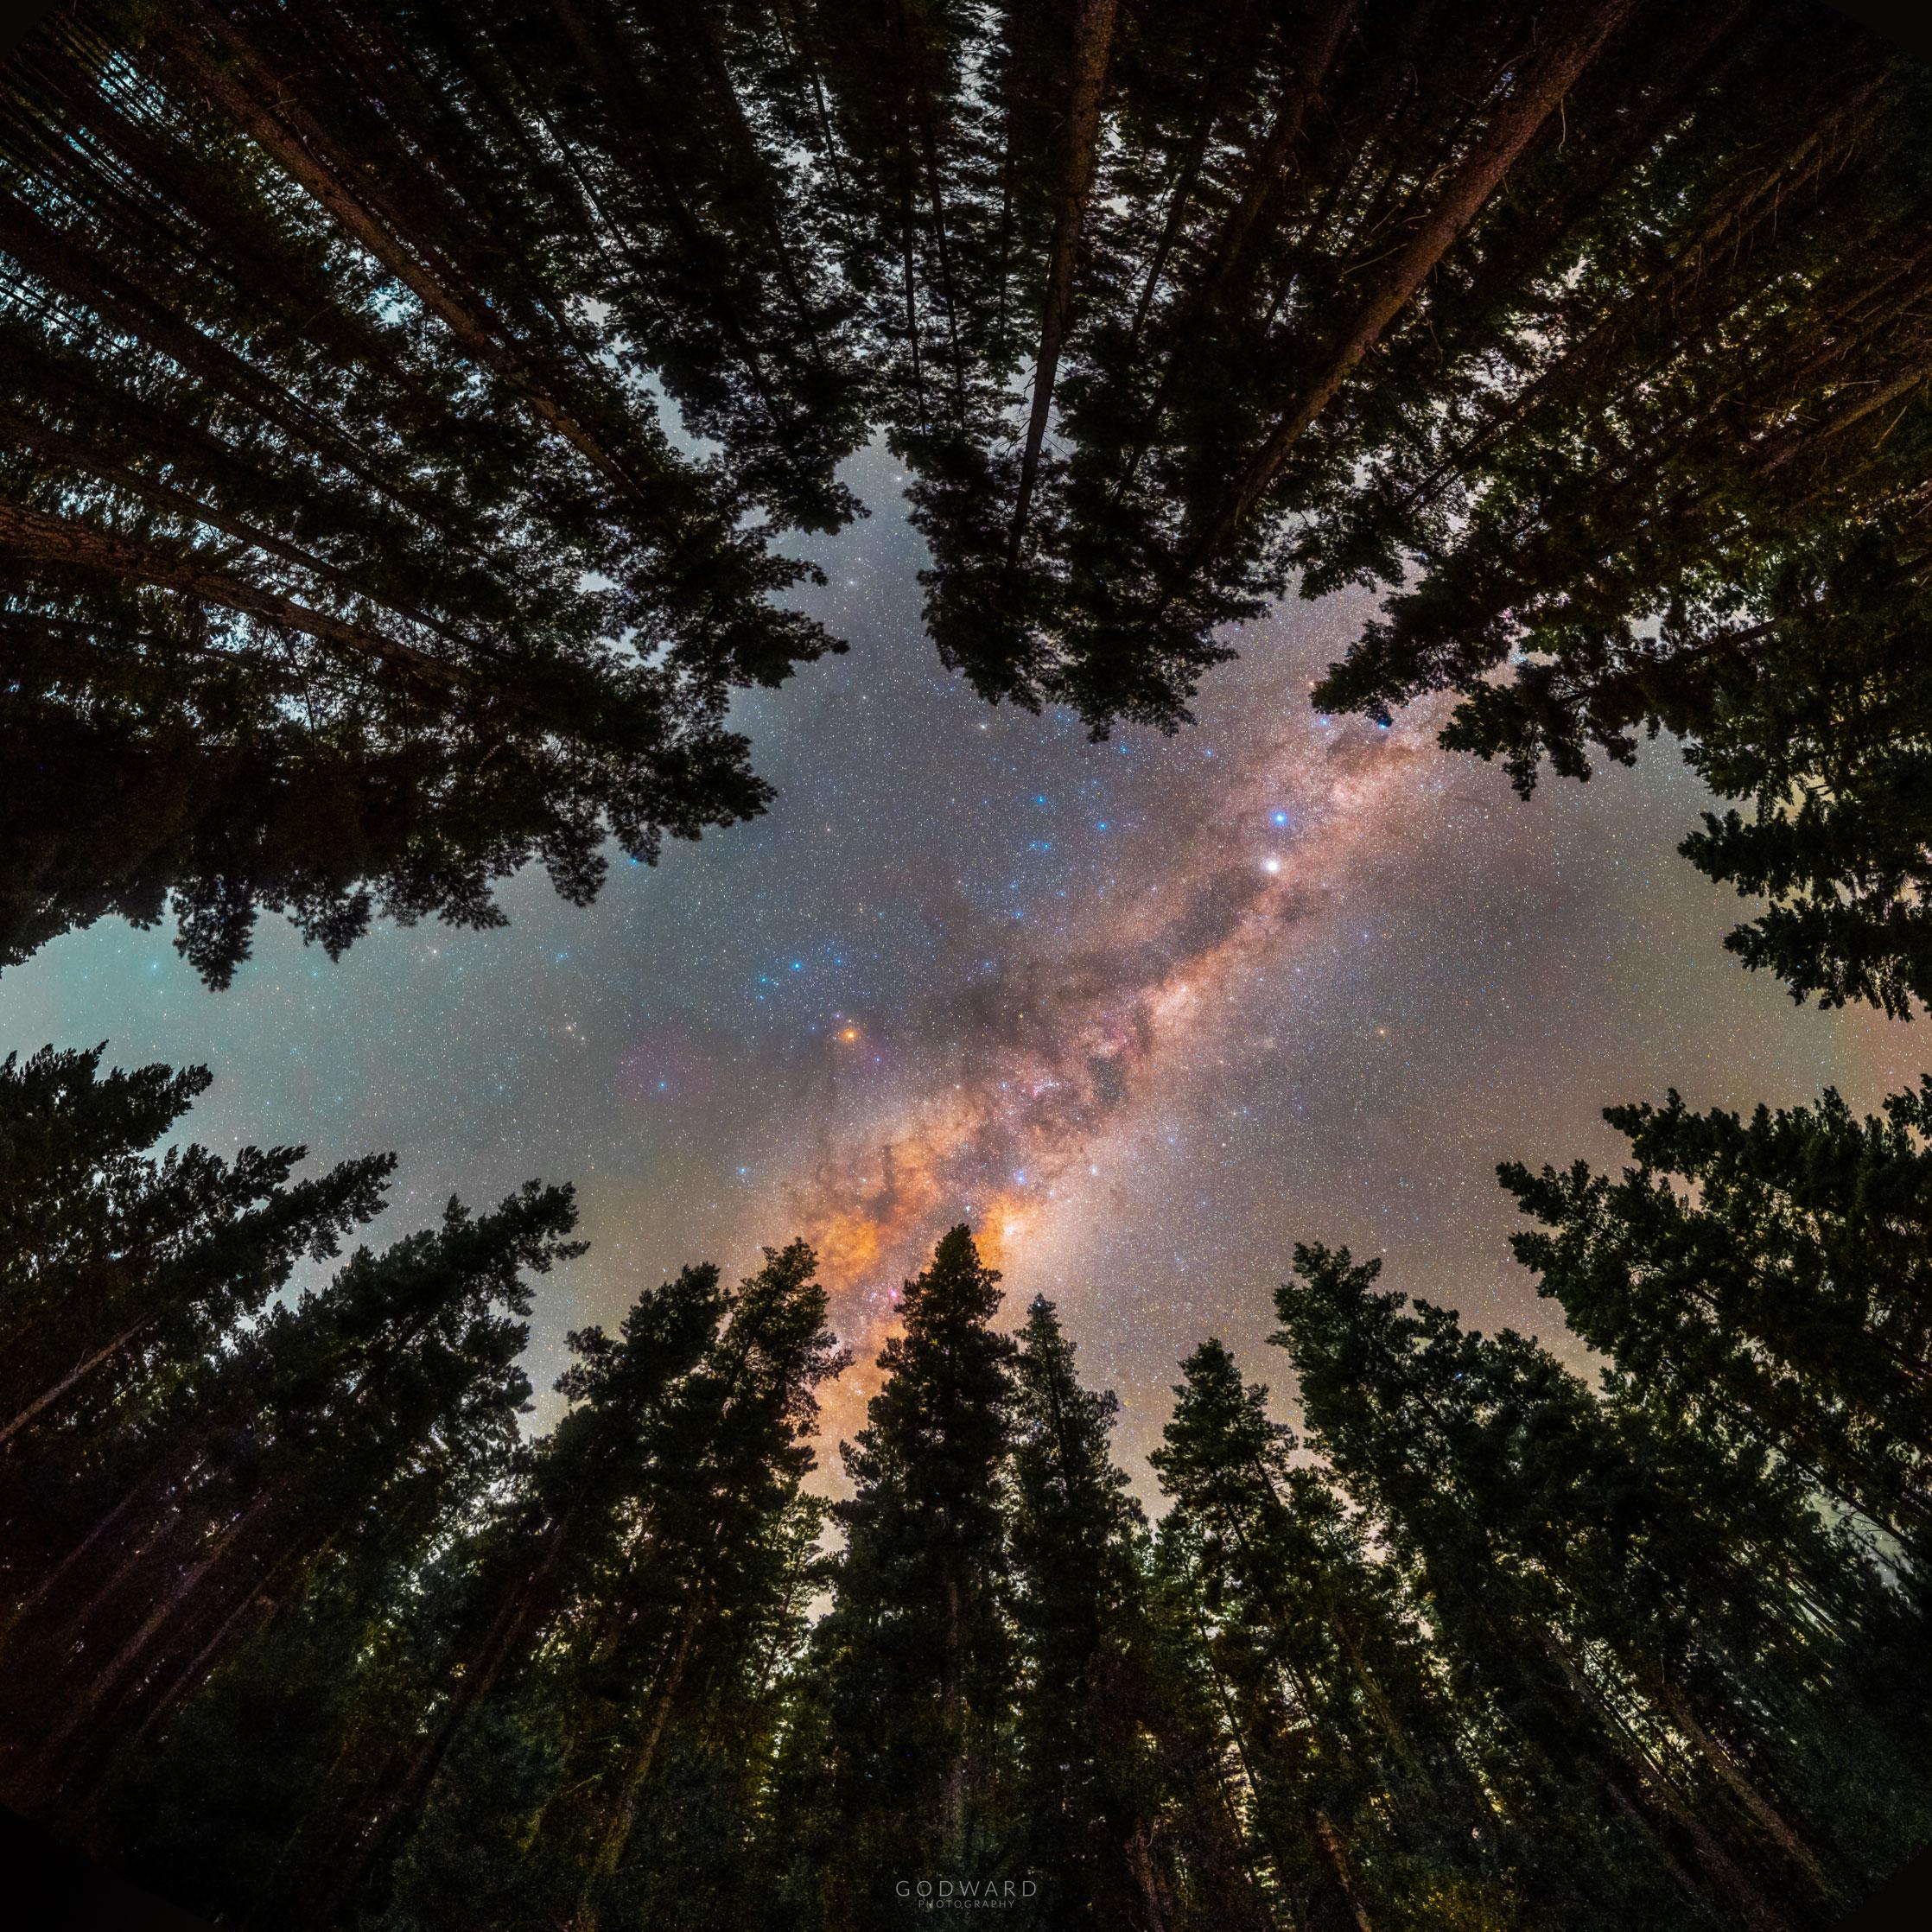 تُظهر الصورة جزءاً من شريط مجرّتنا درب التبّانة، كما يُرى عبر حلقة من الأشجار.